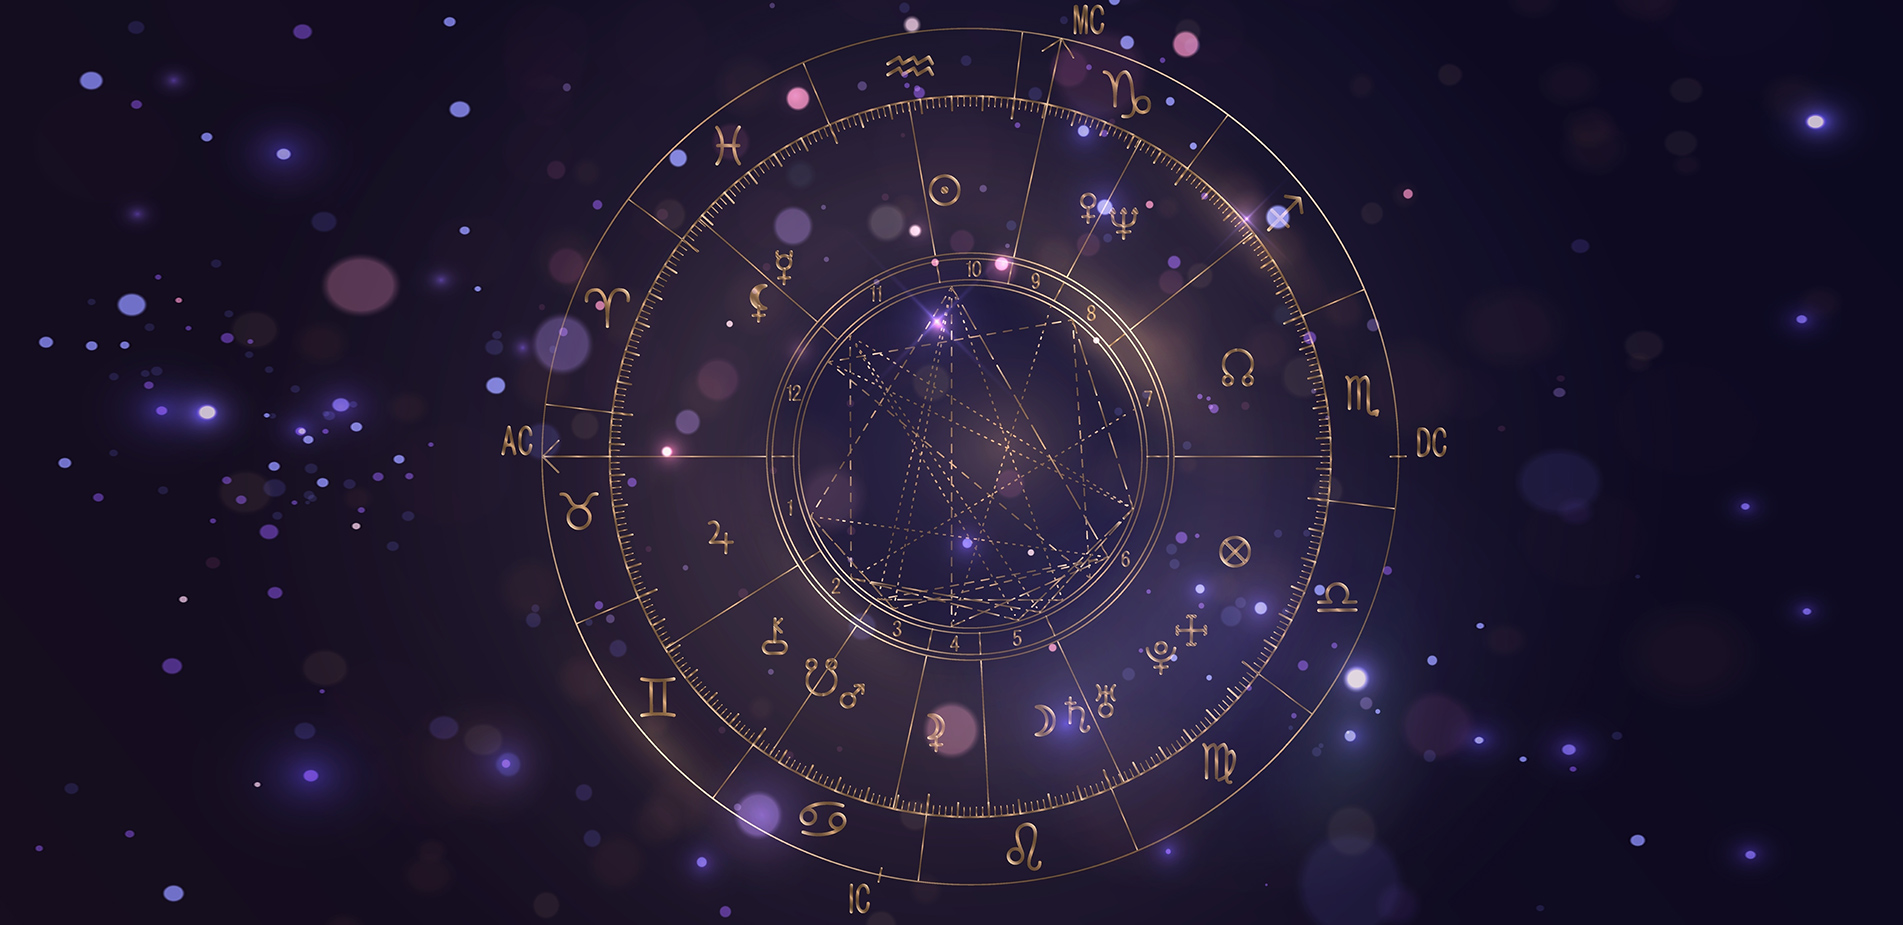 Γιατί τόσο πολλοί άνθρωποι πιστεύουν στην αστρολογία;